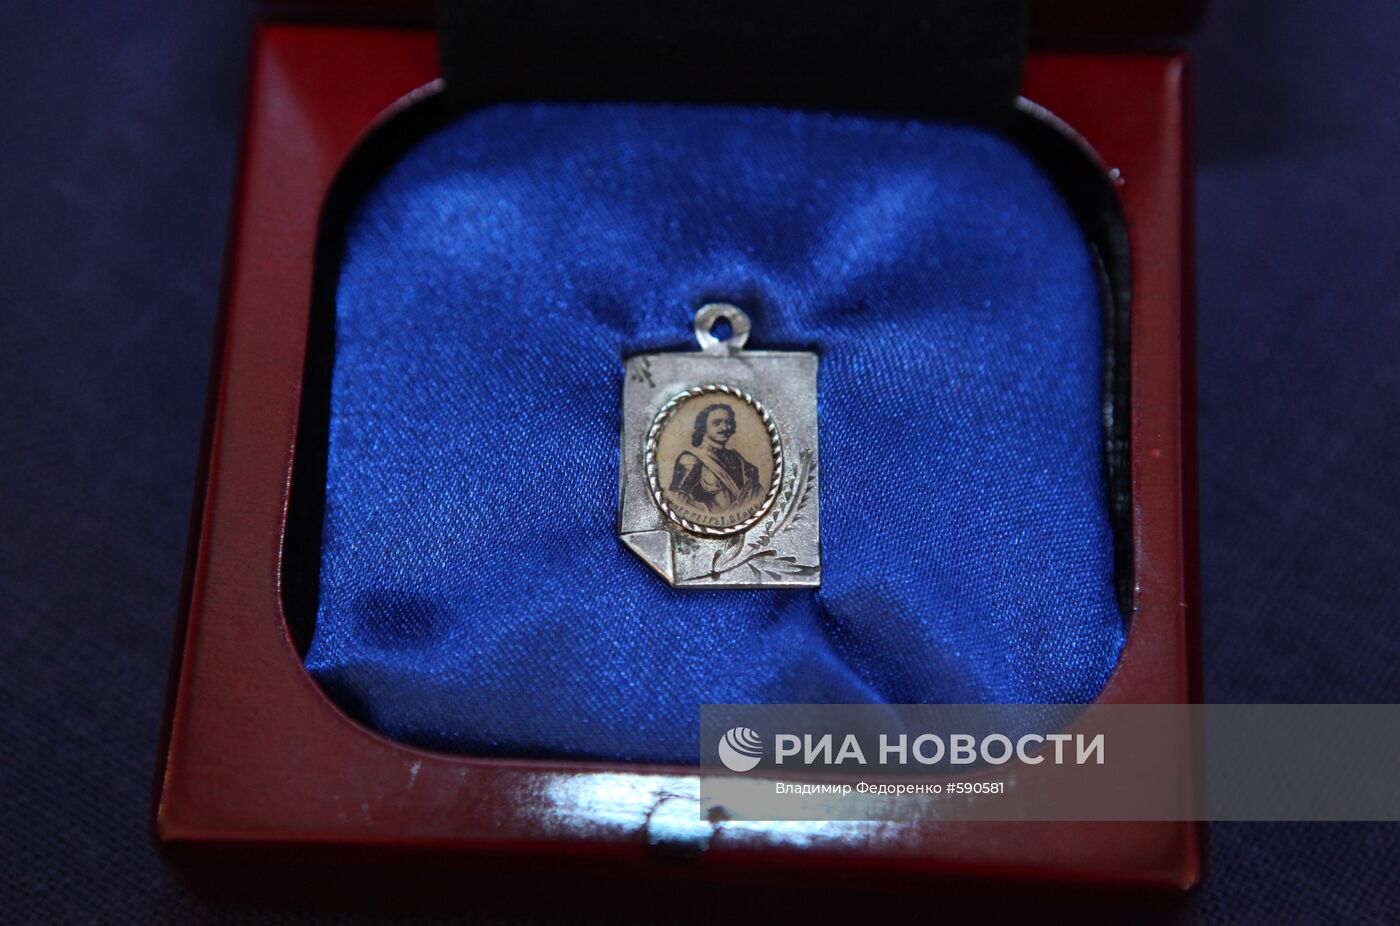 Серебряный медальон семьи последнего российского императора